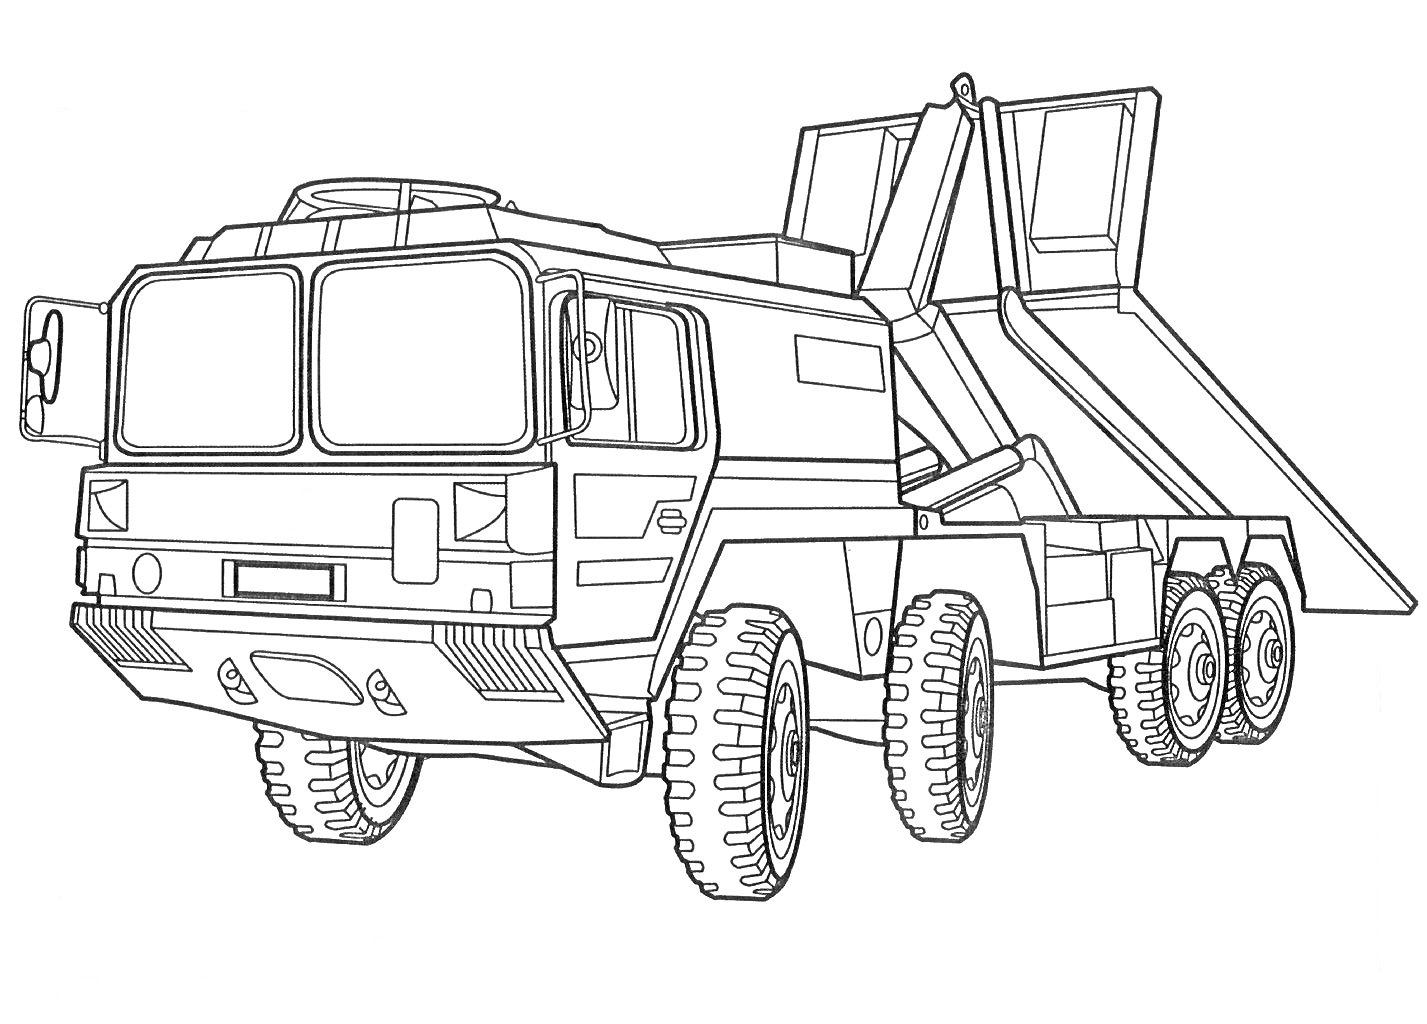 Военный грузовик с поднятым кузовом и шестью колёсами